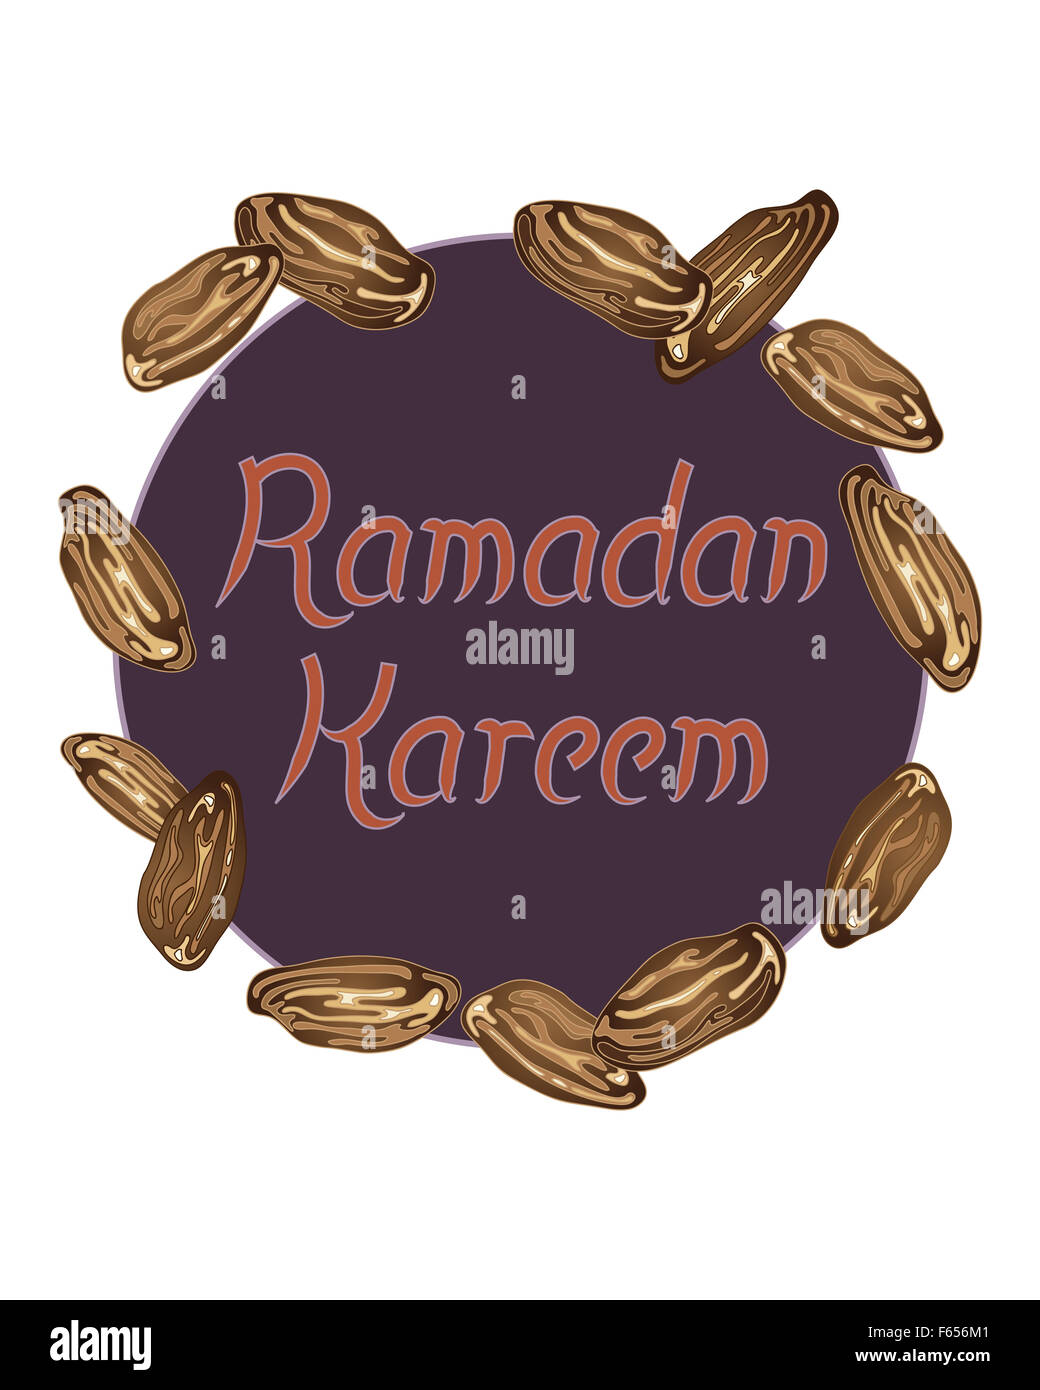 Une illustration d'une carte de souhaits avec festival Ramadan fruits dates décoration et les mots Ramadan Kareem Banque D'Images